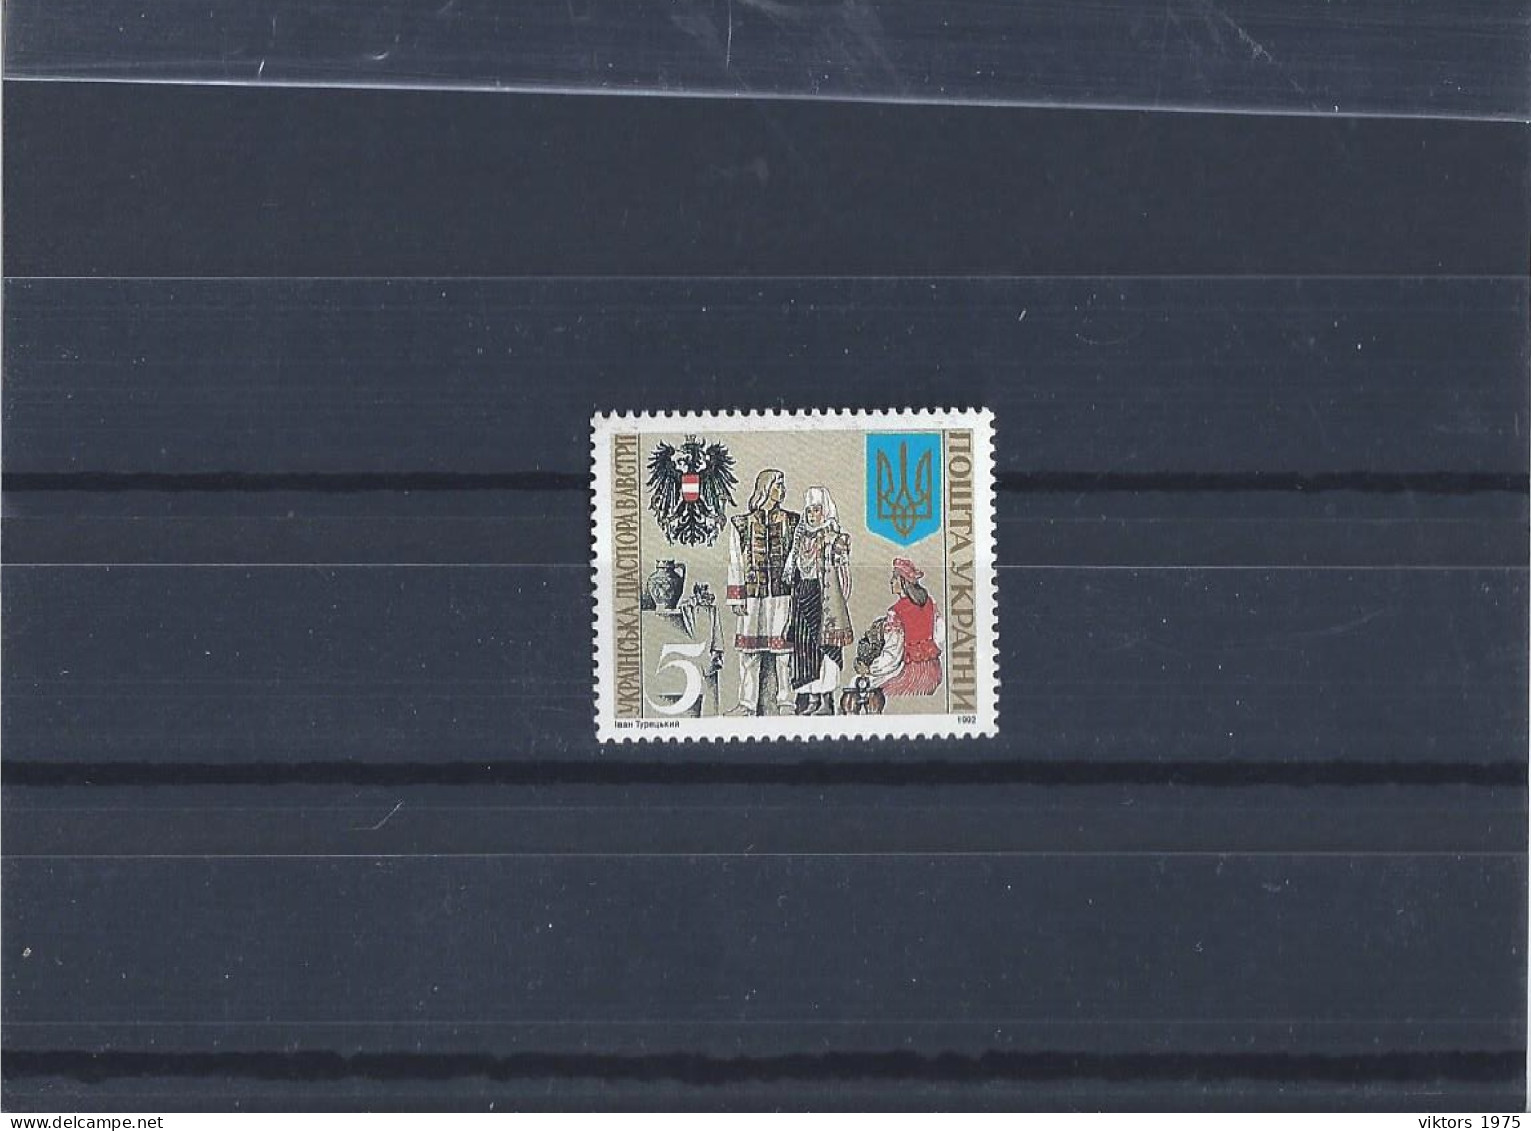 MNH Stamp Nr.92 In MICHEL Catalog - Ukraine